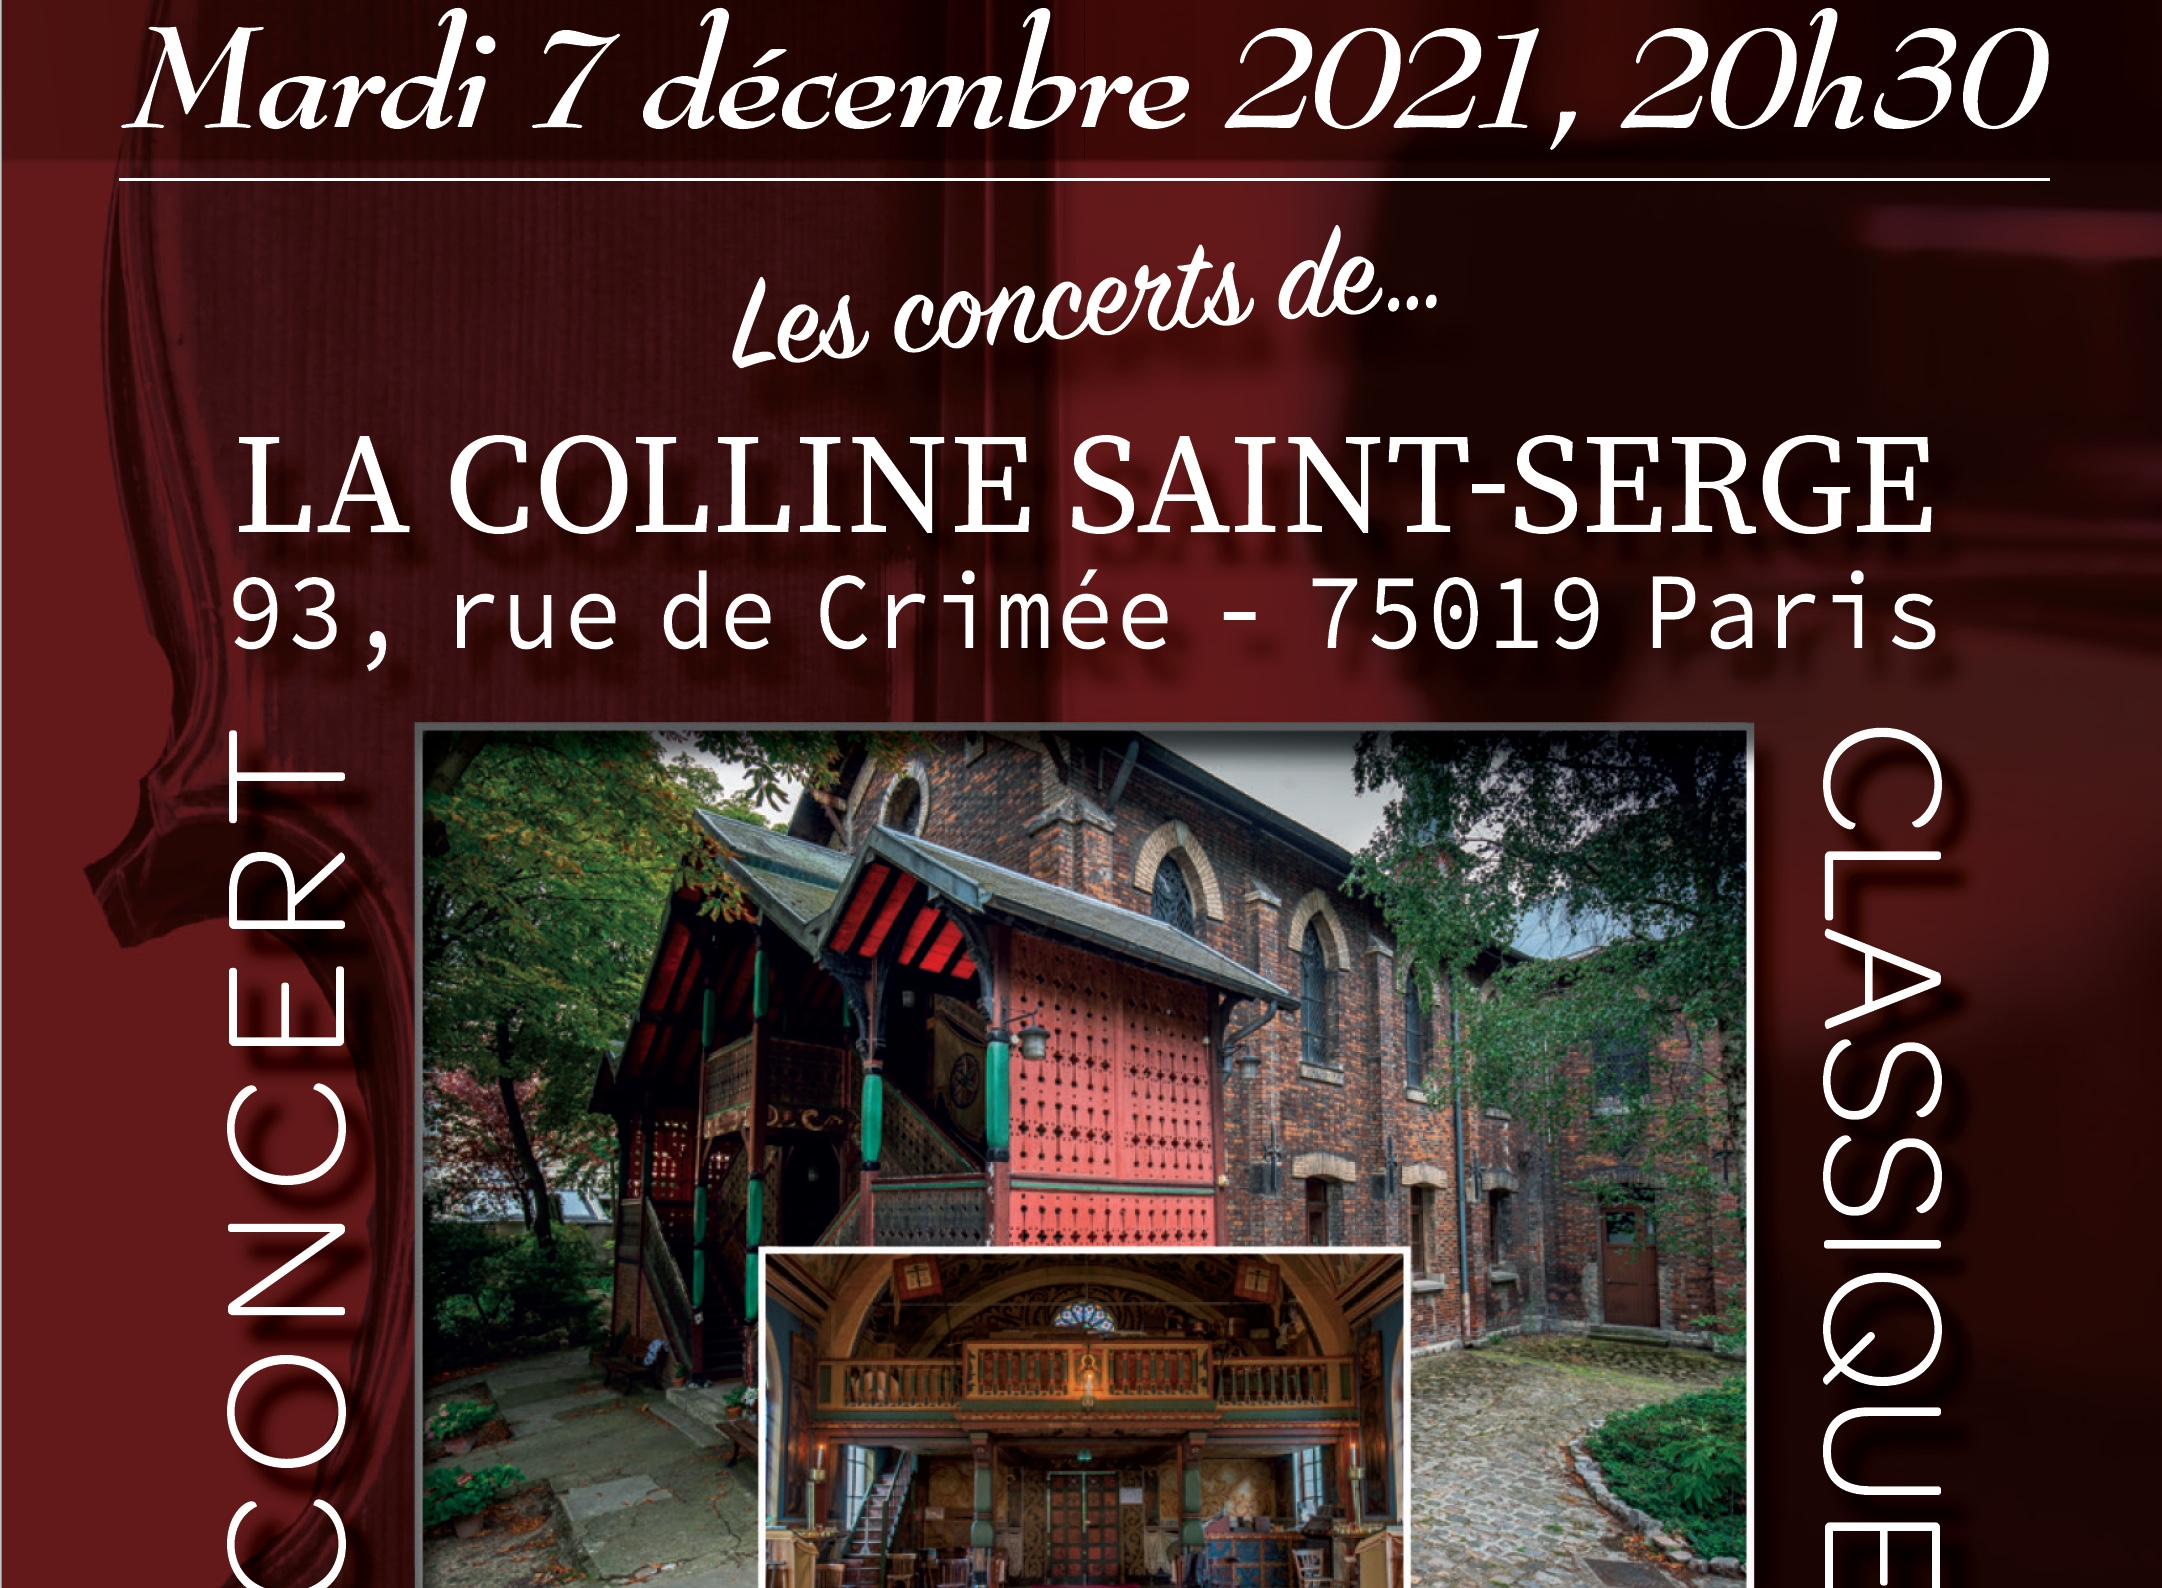 2e concert de la colline saint-serge – mardi 7 décembre